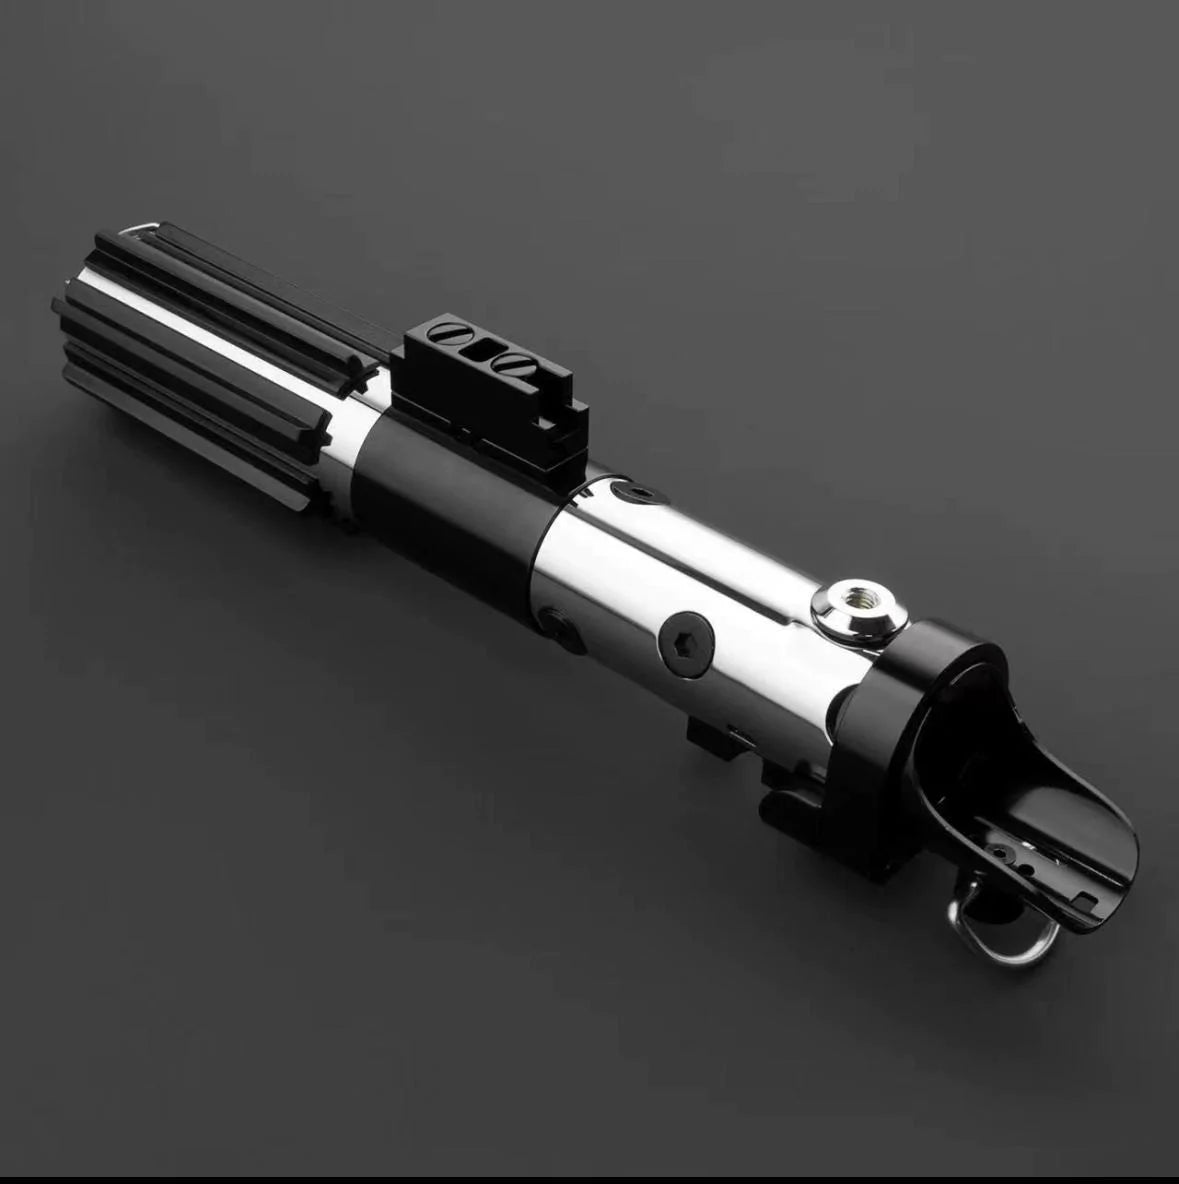 Neopixel Lightsaber-Combat Saber - Model Vader E6-Padawan Outpost